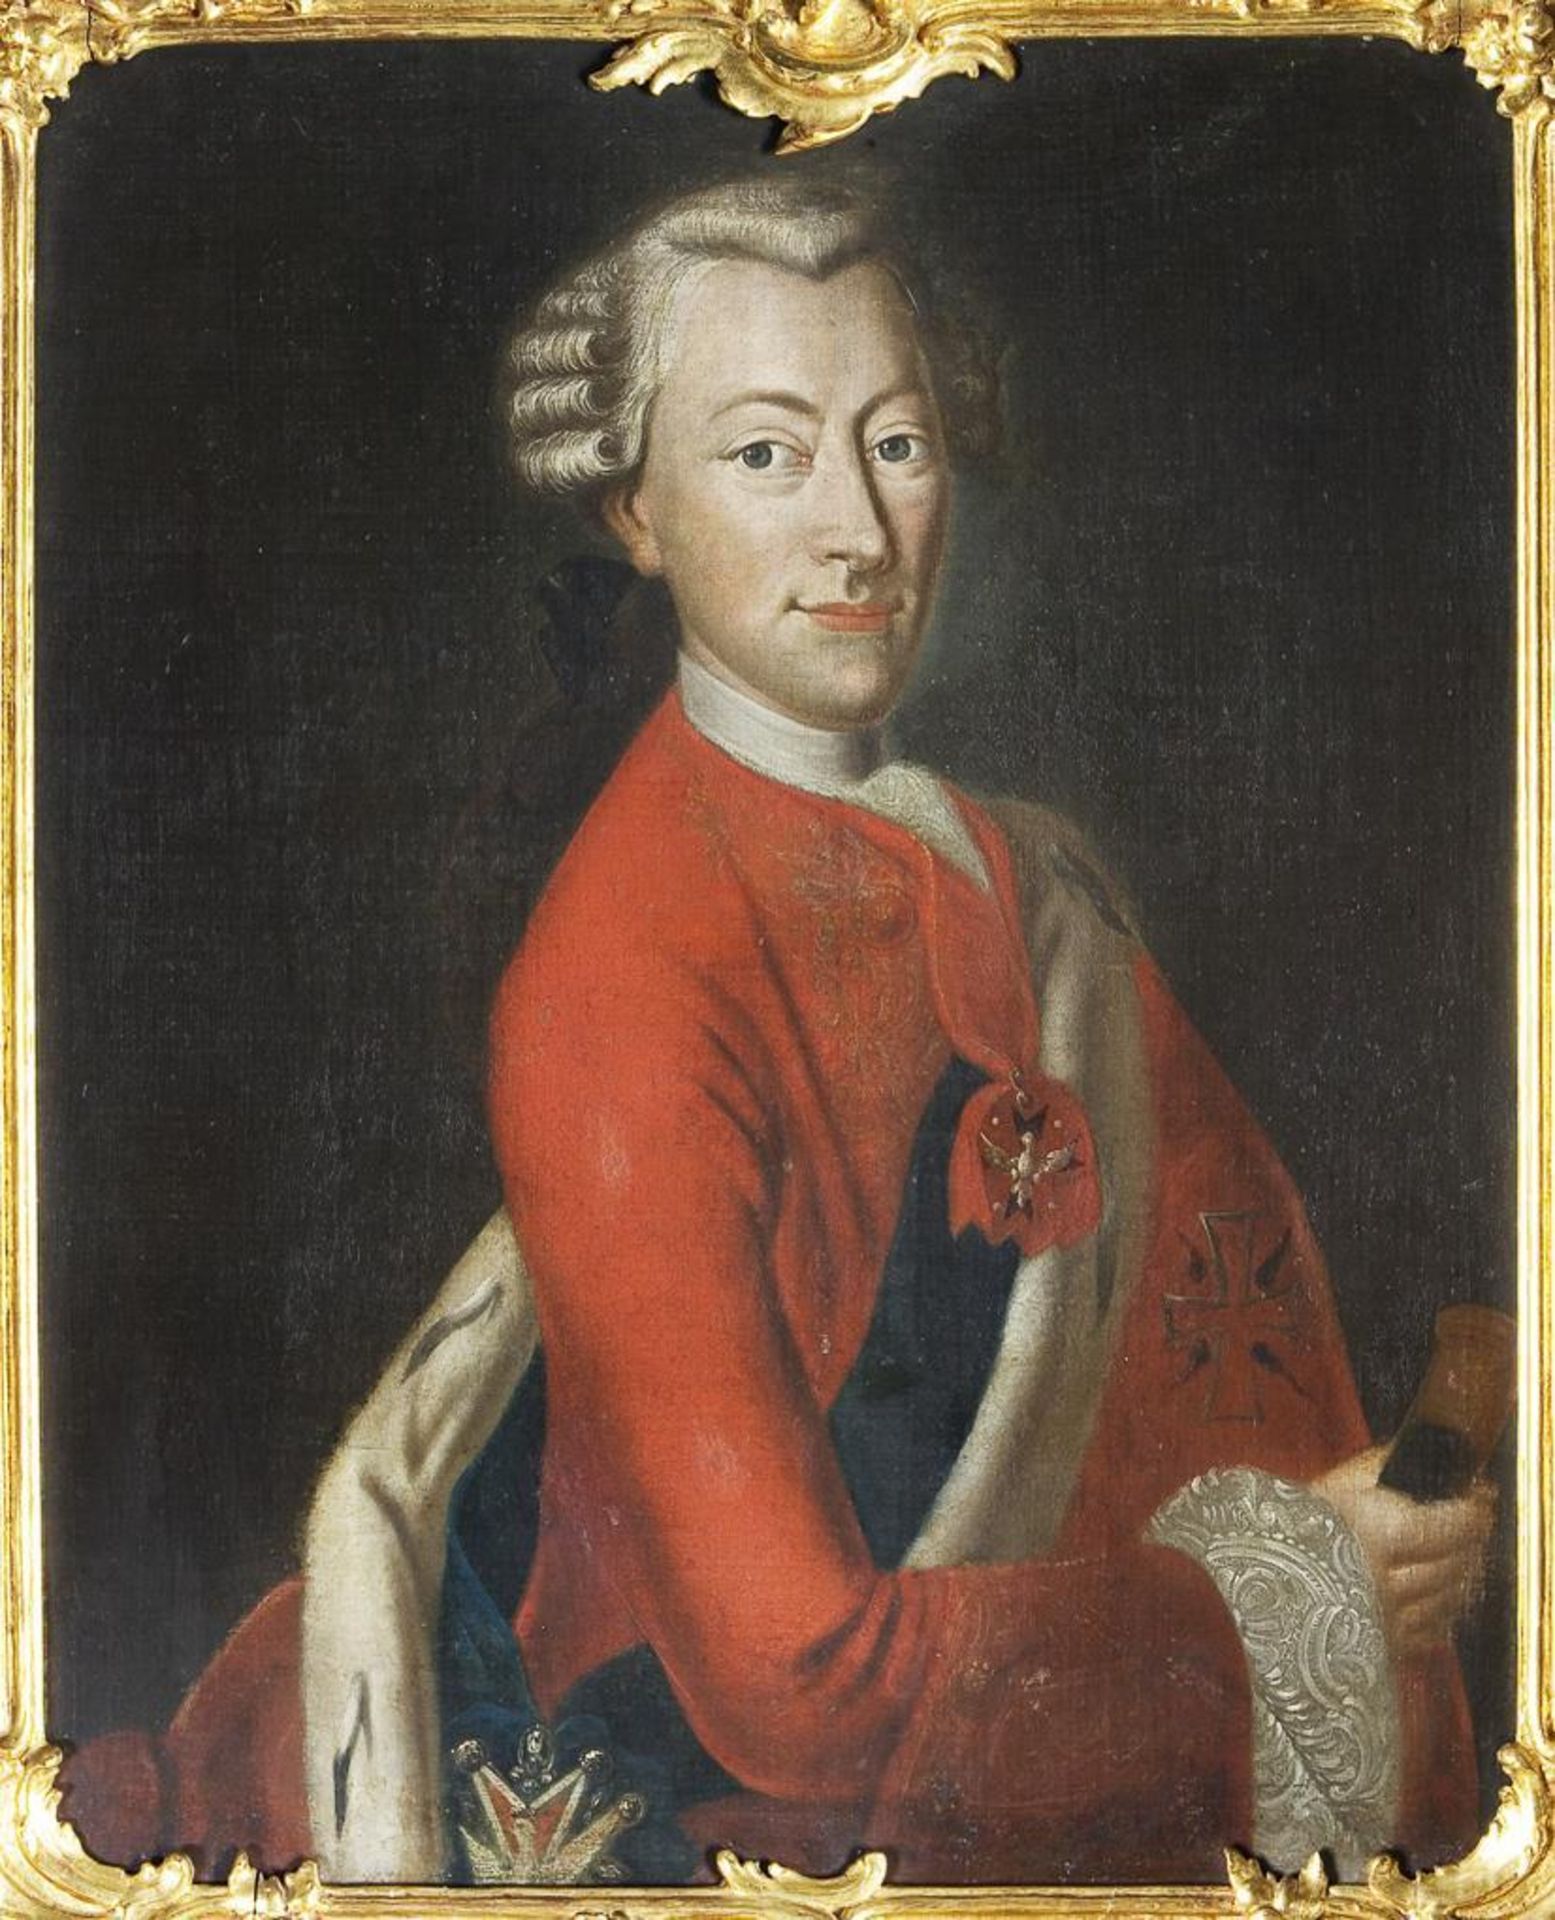 BILDNISMALER MITTE 18. JAHRHUNDERT. Ernst August II. Konstantin Herzog von Sachsen-Weimar-Eisenach. - Bild 2 aus 4